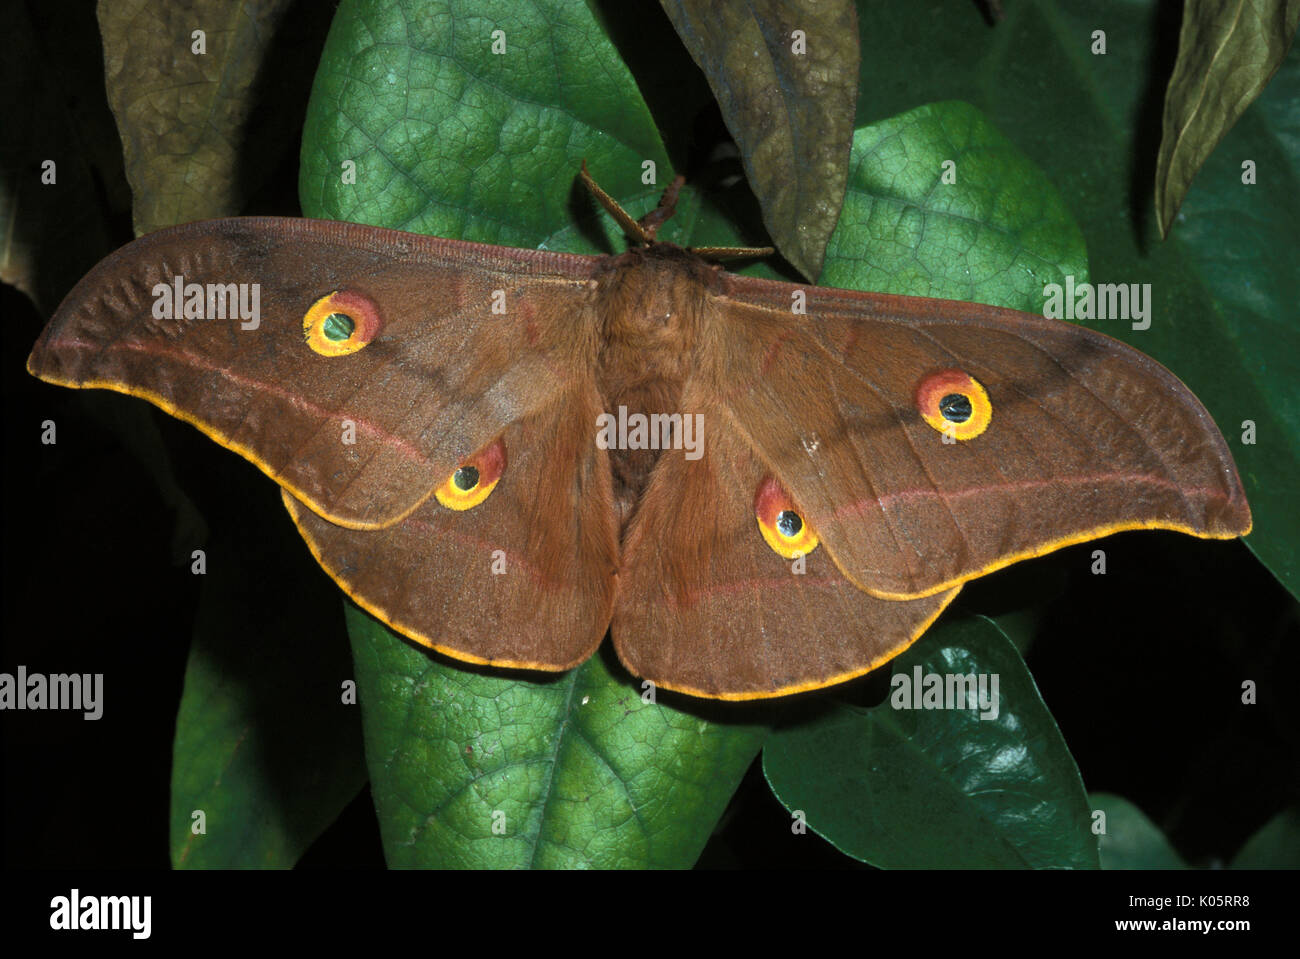 Silkmoth chêne chinois, Antheraea pernyi, Papillon Tussah, des profils avec des ailes ouvertes, avec des taches brun jaune, a été l'un des principaux producteurs de soie Tussah Banque D'Images